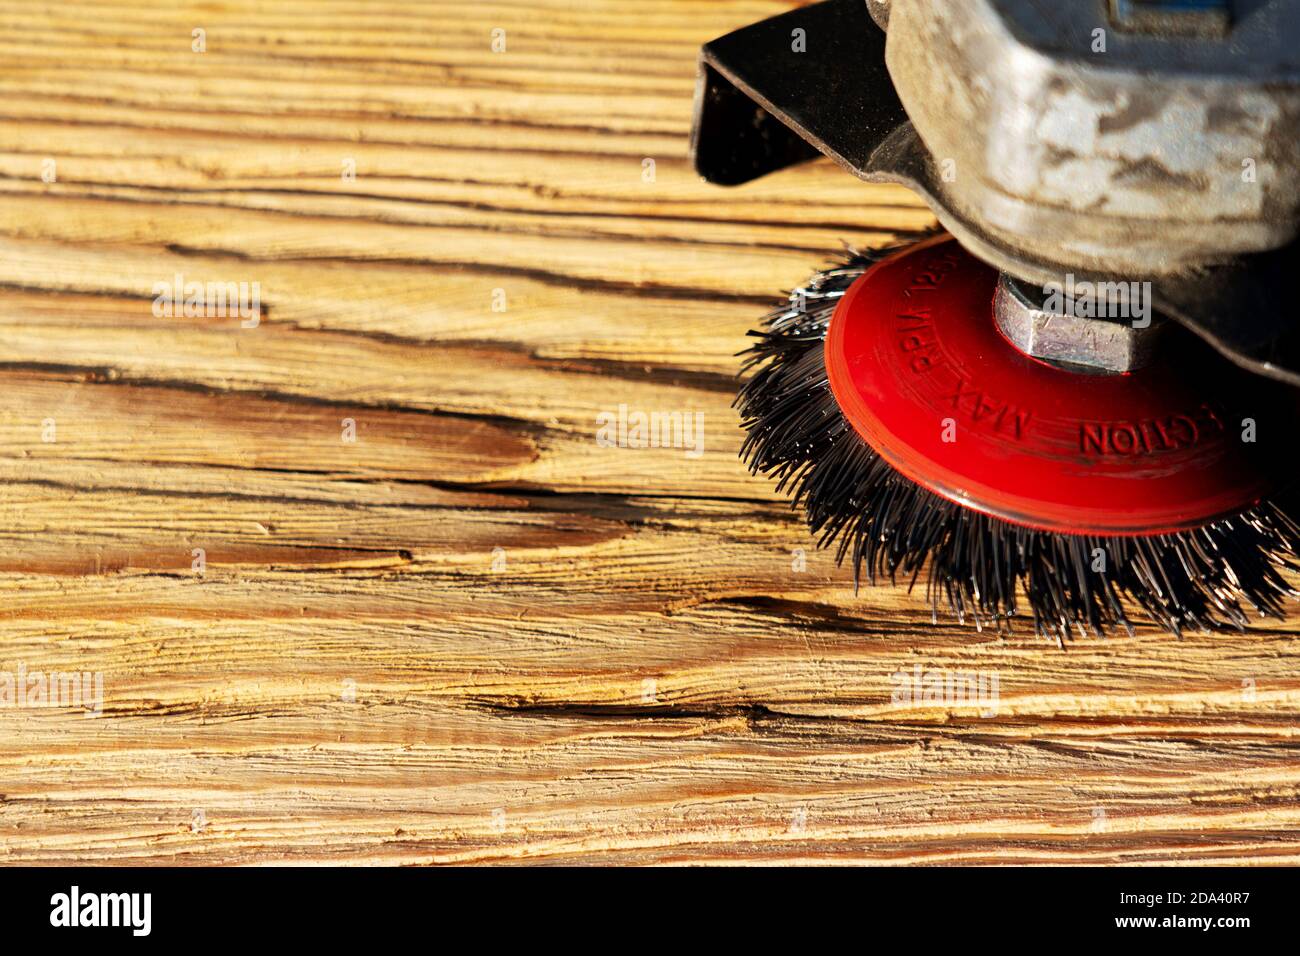 Elektrische rotierende Bürste Metallscheibe ein Stück Holz Schleifen  Stockfotografie - Alamy